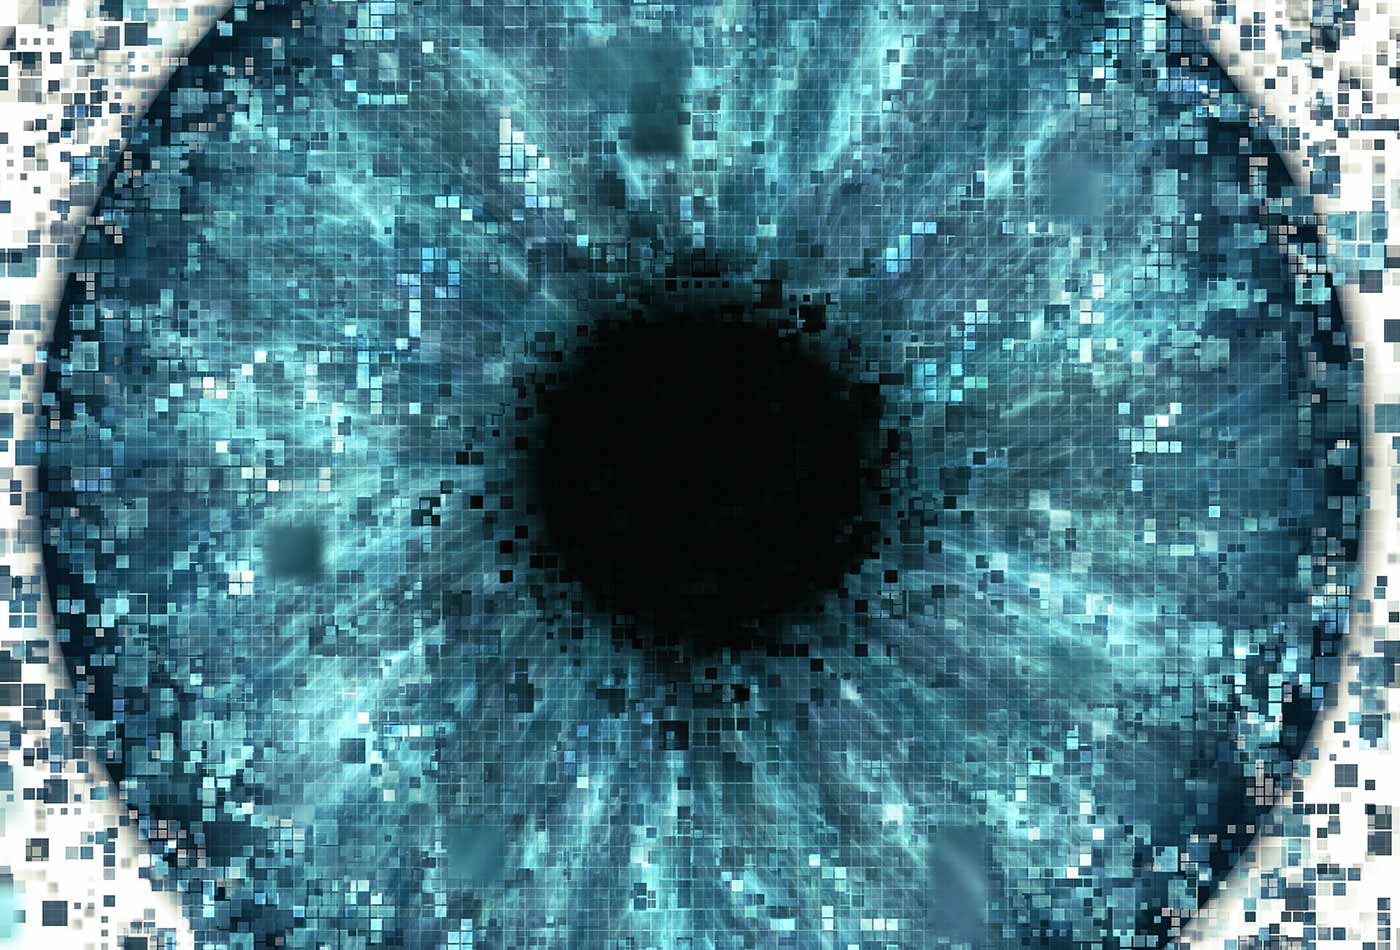 Pixelated eye